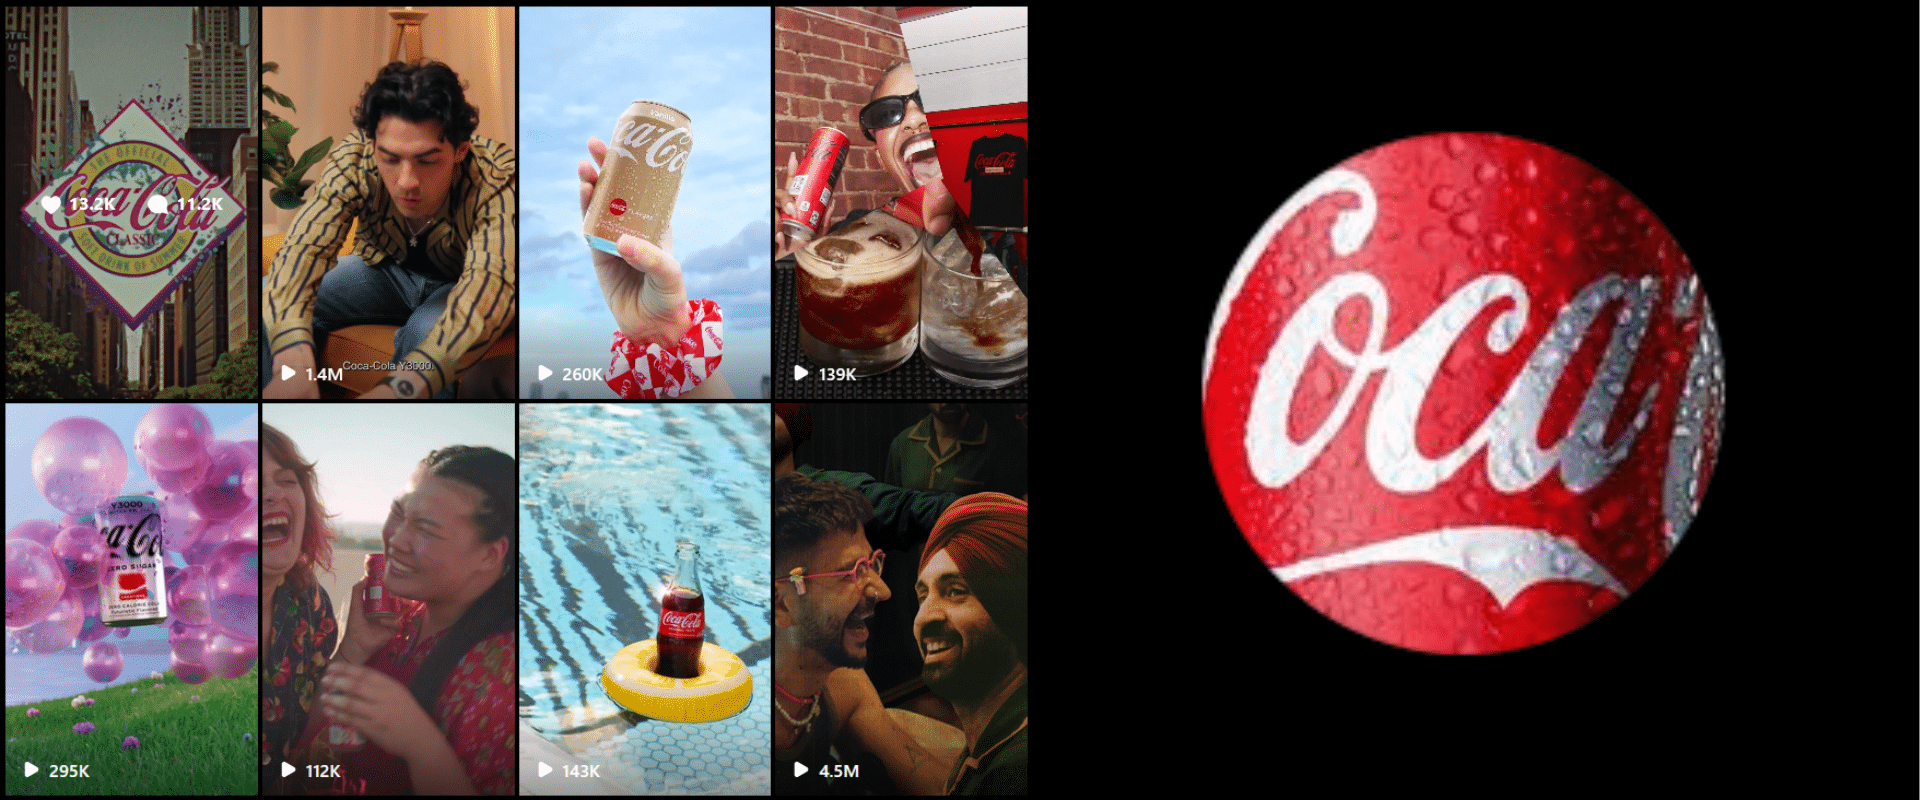 Coca cola's new ad campaign.